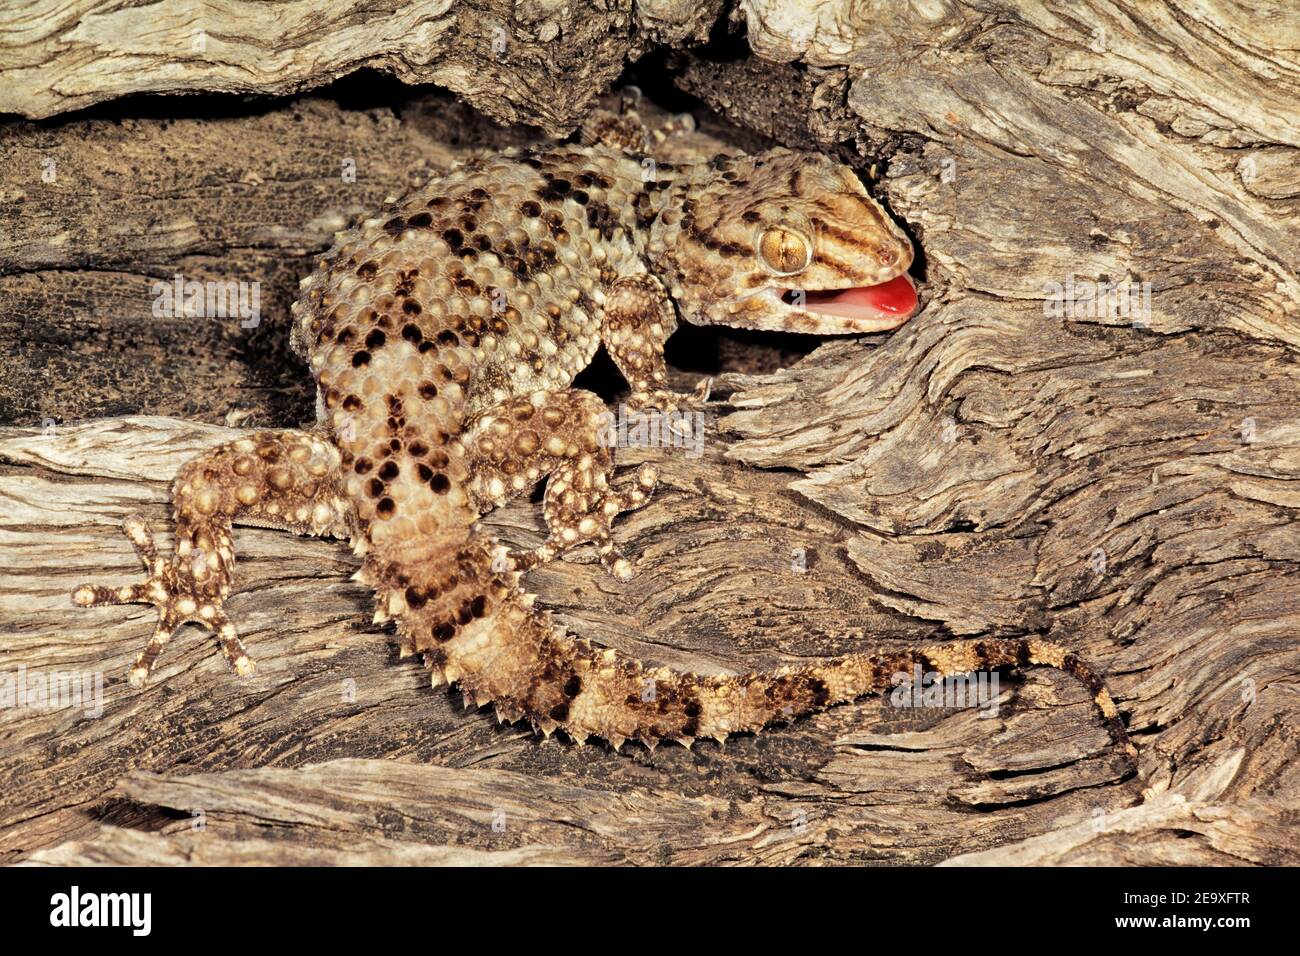 Un bibron gecko (Pachydactylus bibronii) mimetato sulla corteccia degli alberi, Sudafrica Foto Stock